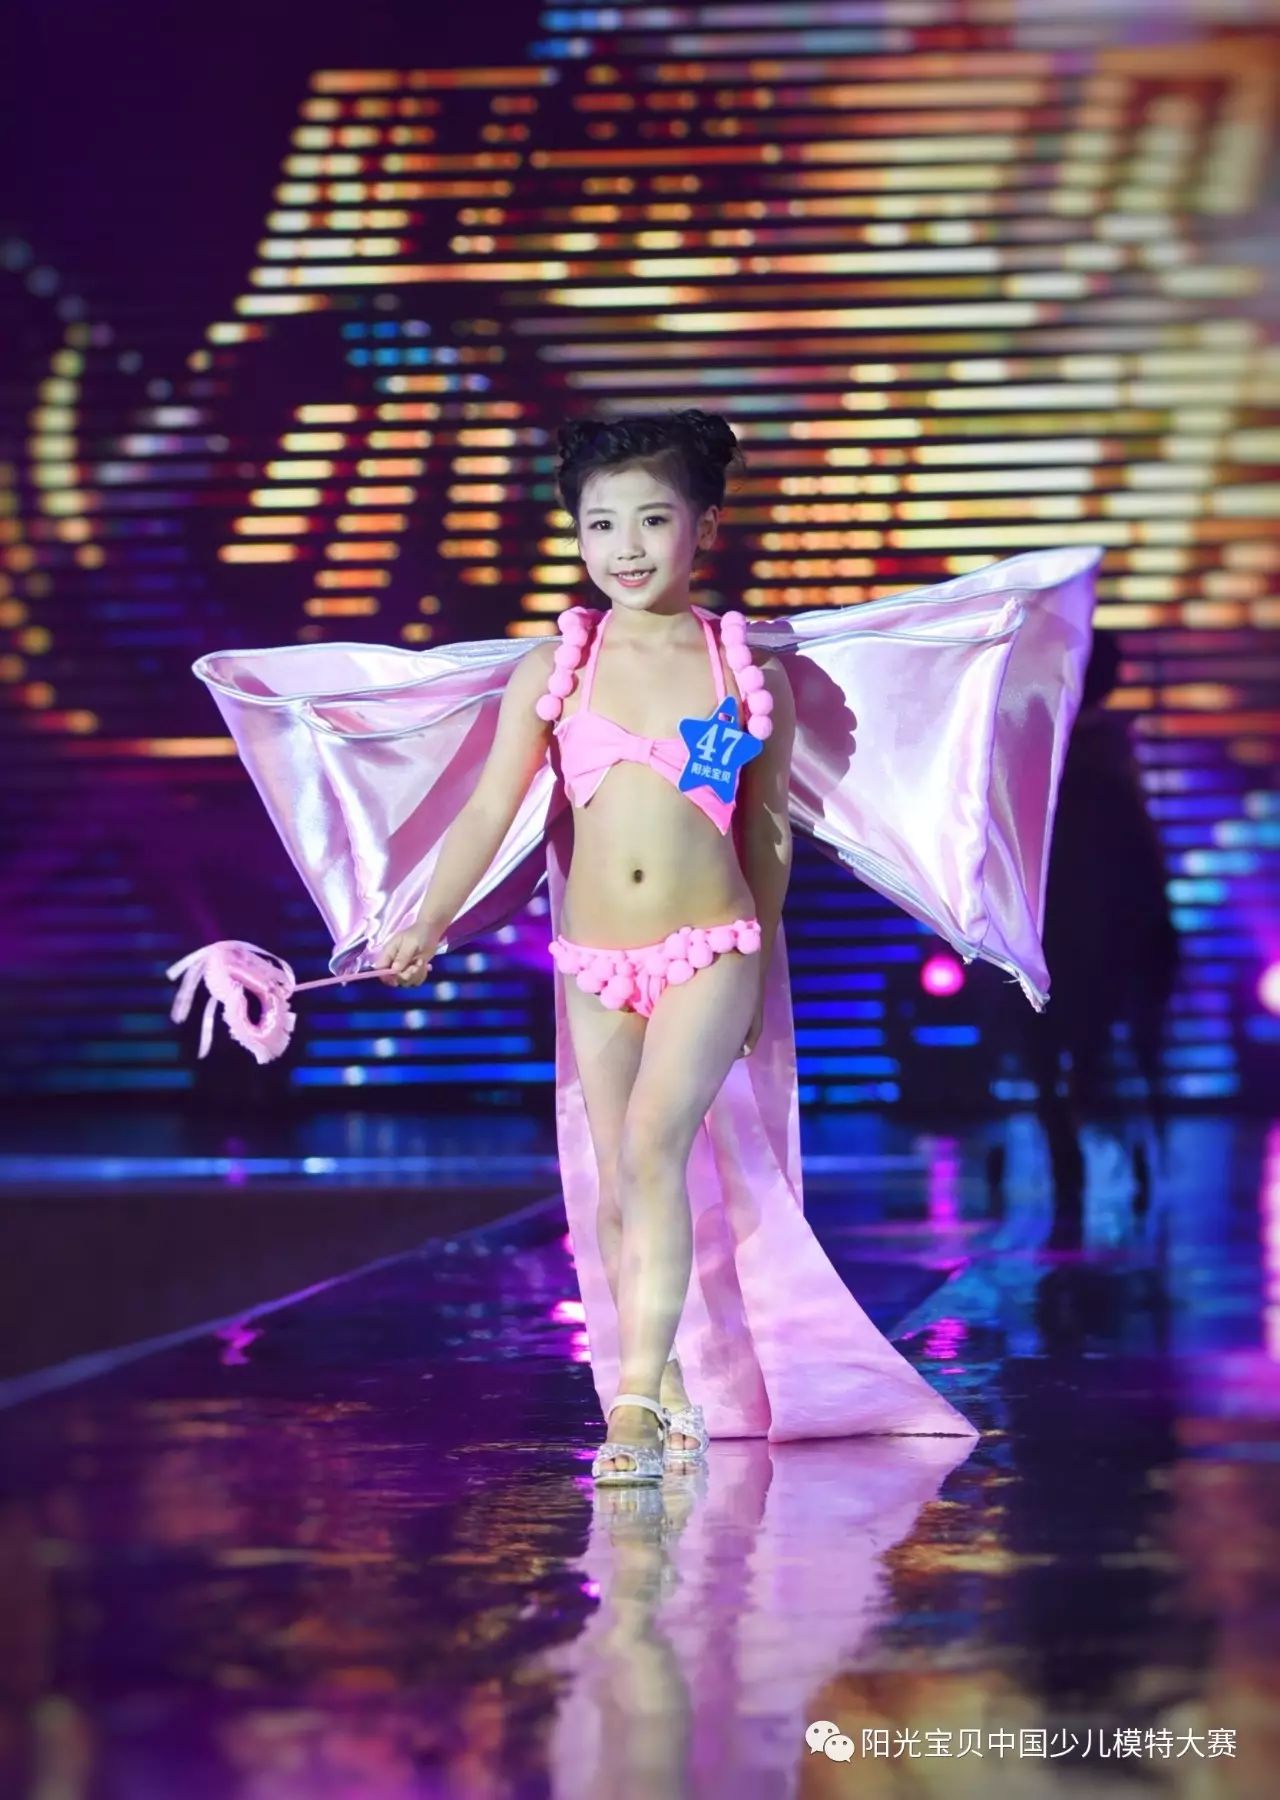 阳光宝贝中国少儿模特大赛 2017上海维密的视频你看了吗?